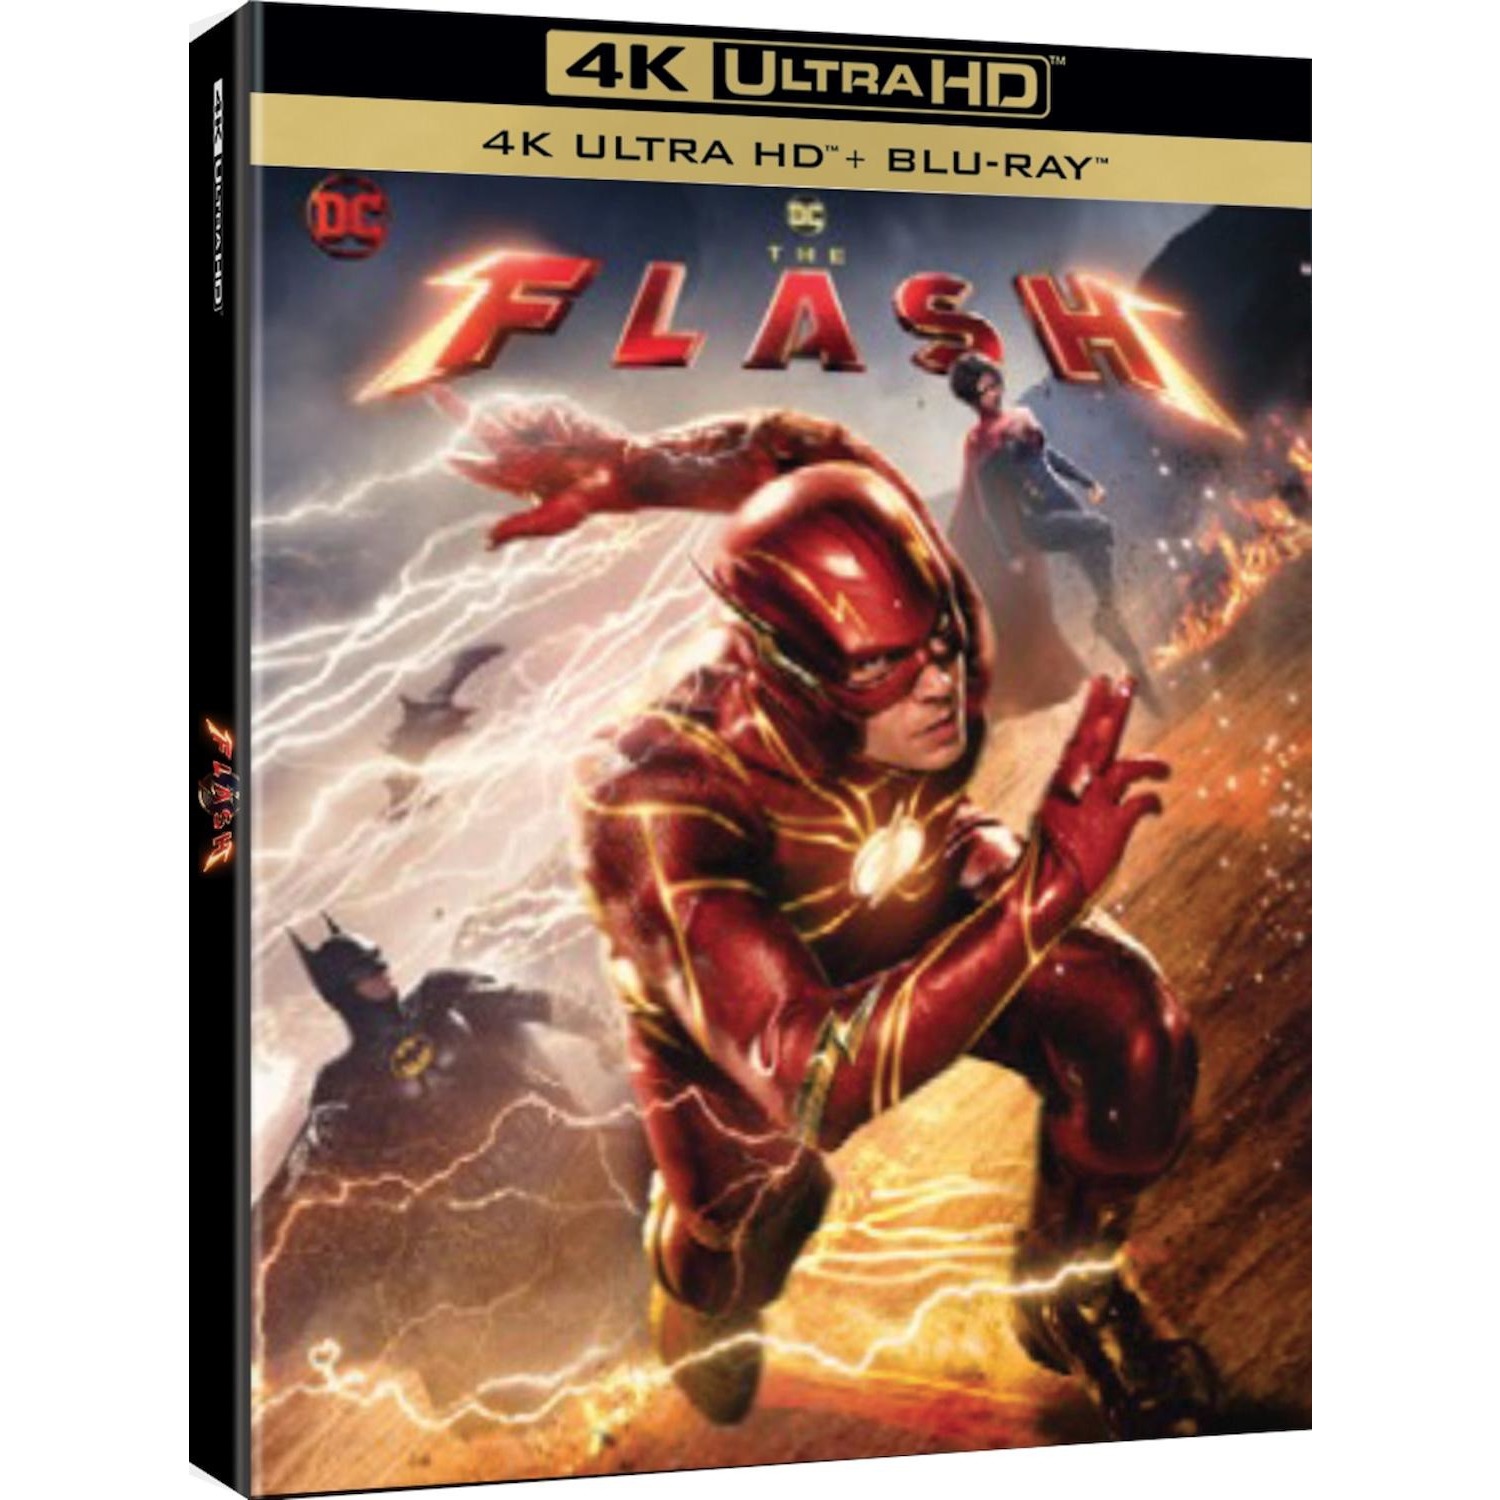 Immagine per Bluray 4K The Flash da DIMOStore